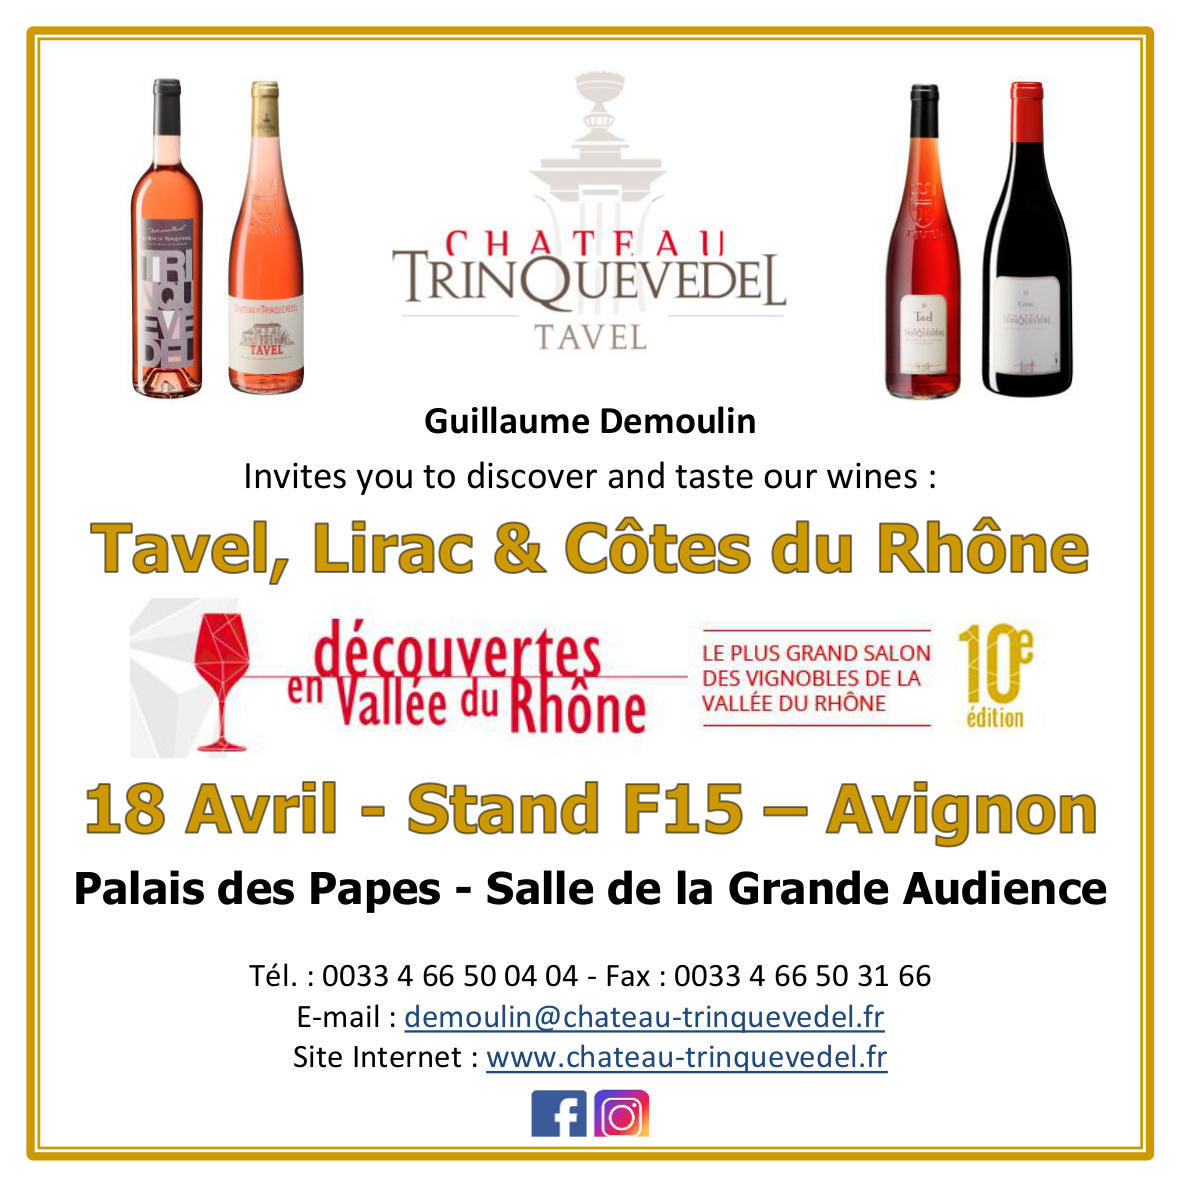 Découvertes en Vallée du rhône : We'll be there !